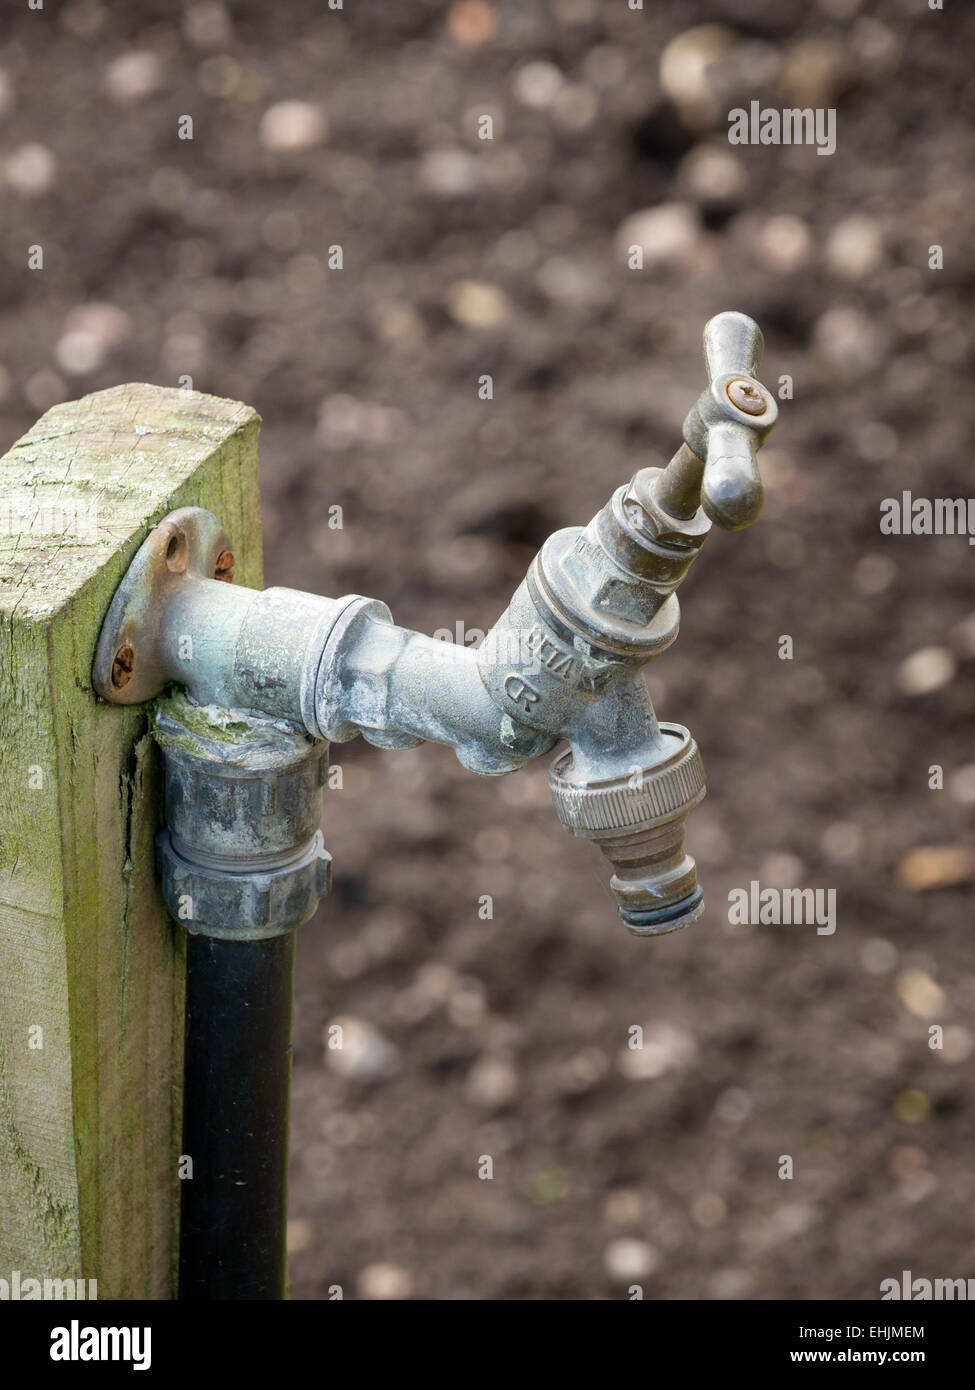 Old outdoor metal garden water tap detail Stock Photo